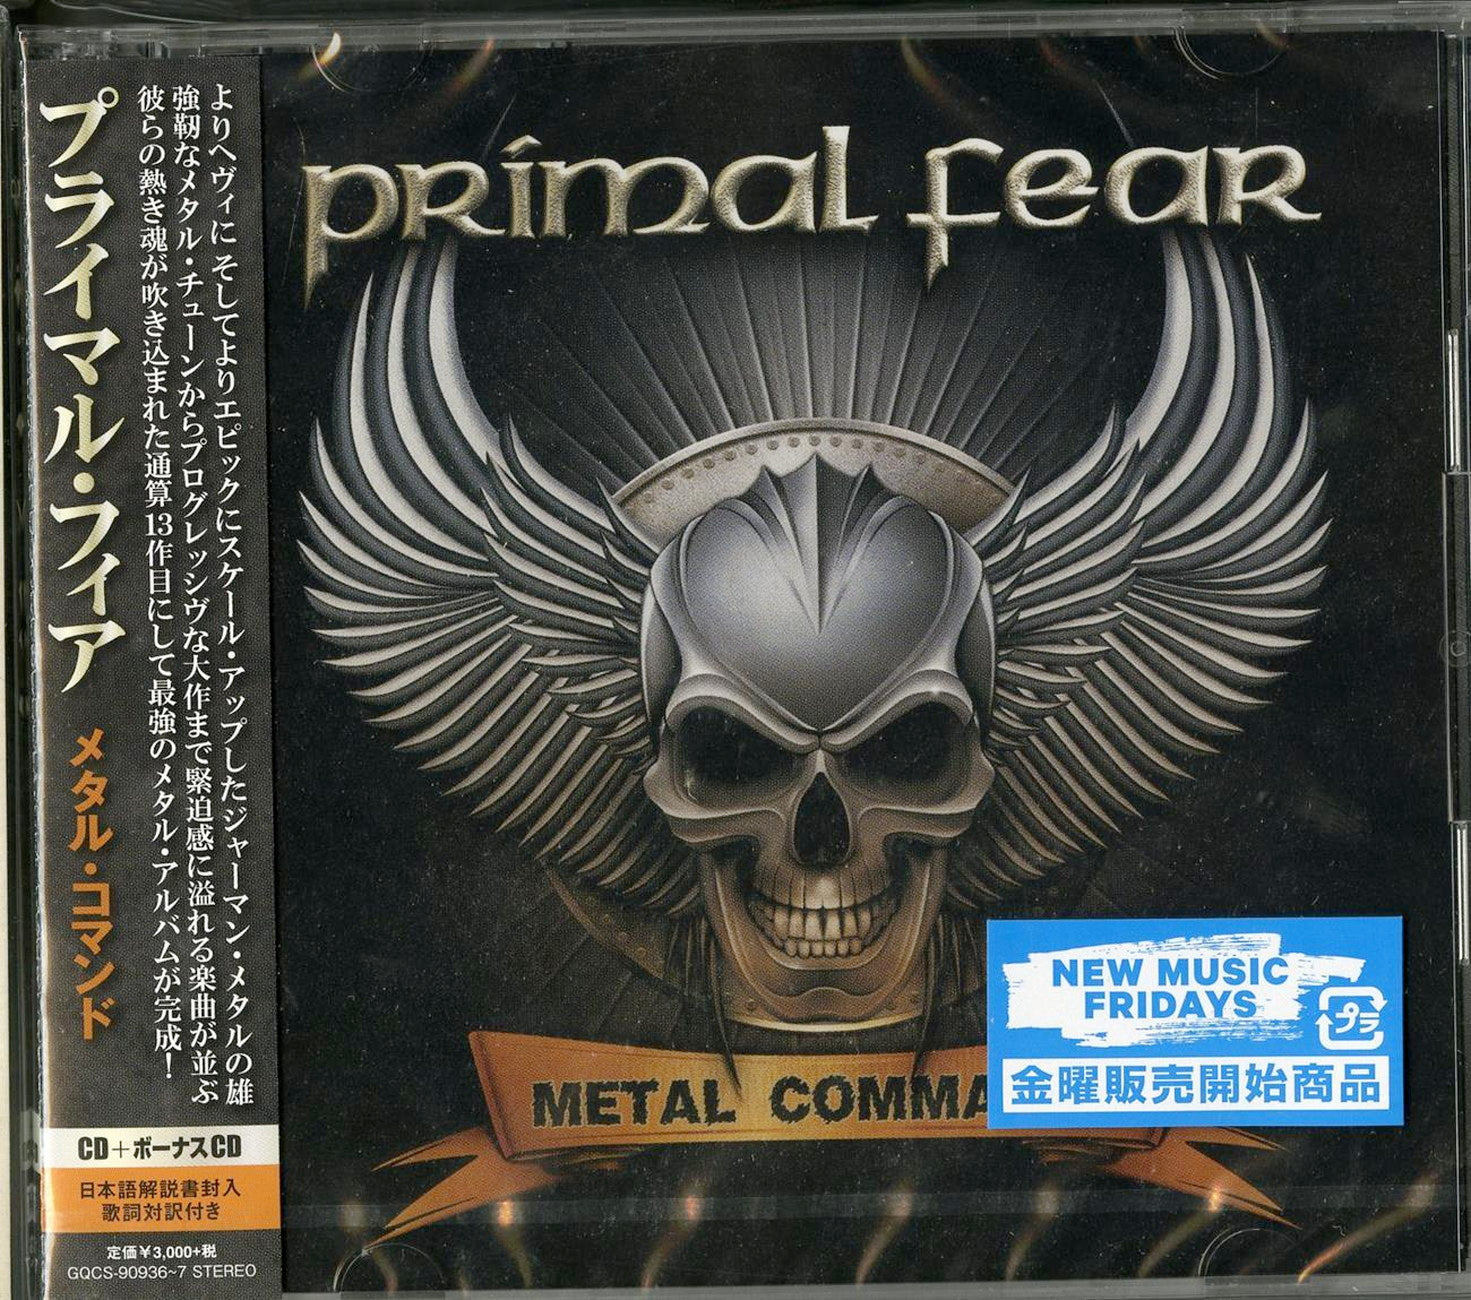 Metal CDs Page 206 – CDs Vinyl Japan Store